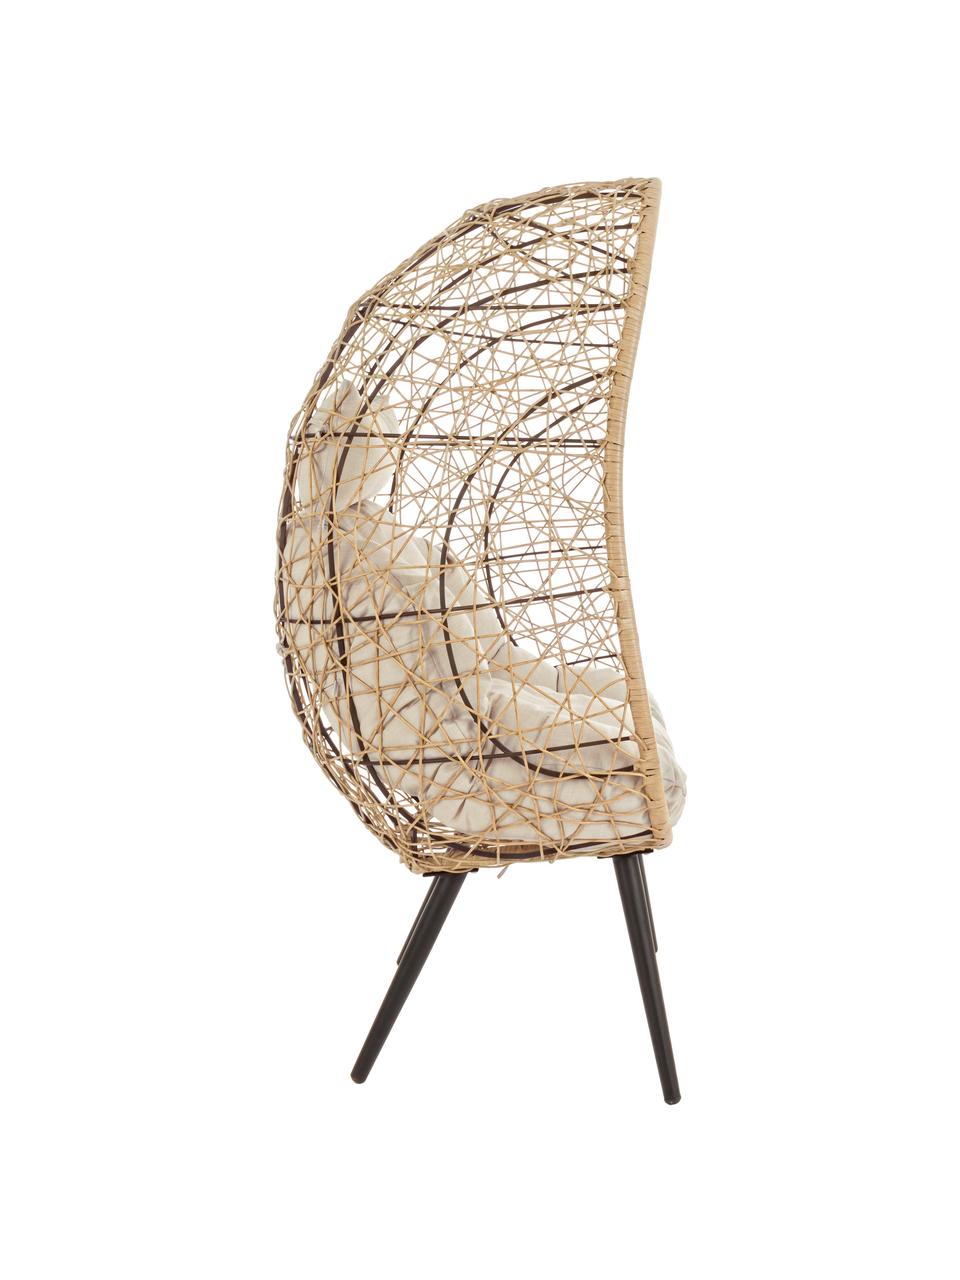 Outdoor fauteuil Marley, Frame: gepoedercoat aluminium, Zitvlak: synthetische vezels, Bekleding: polyester, Beige, crèmekleurig, zwart, B 87 x D 70 cm